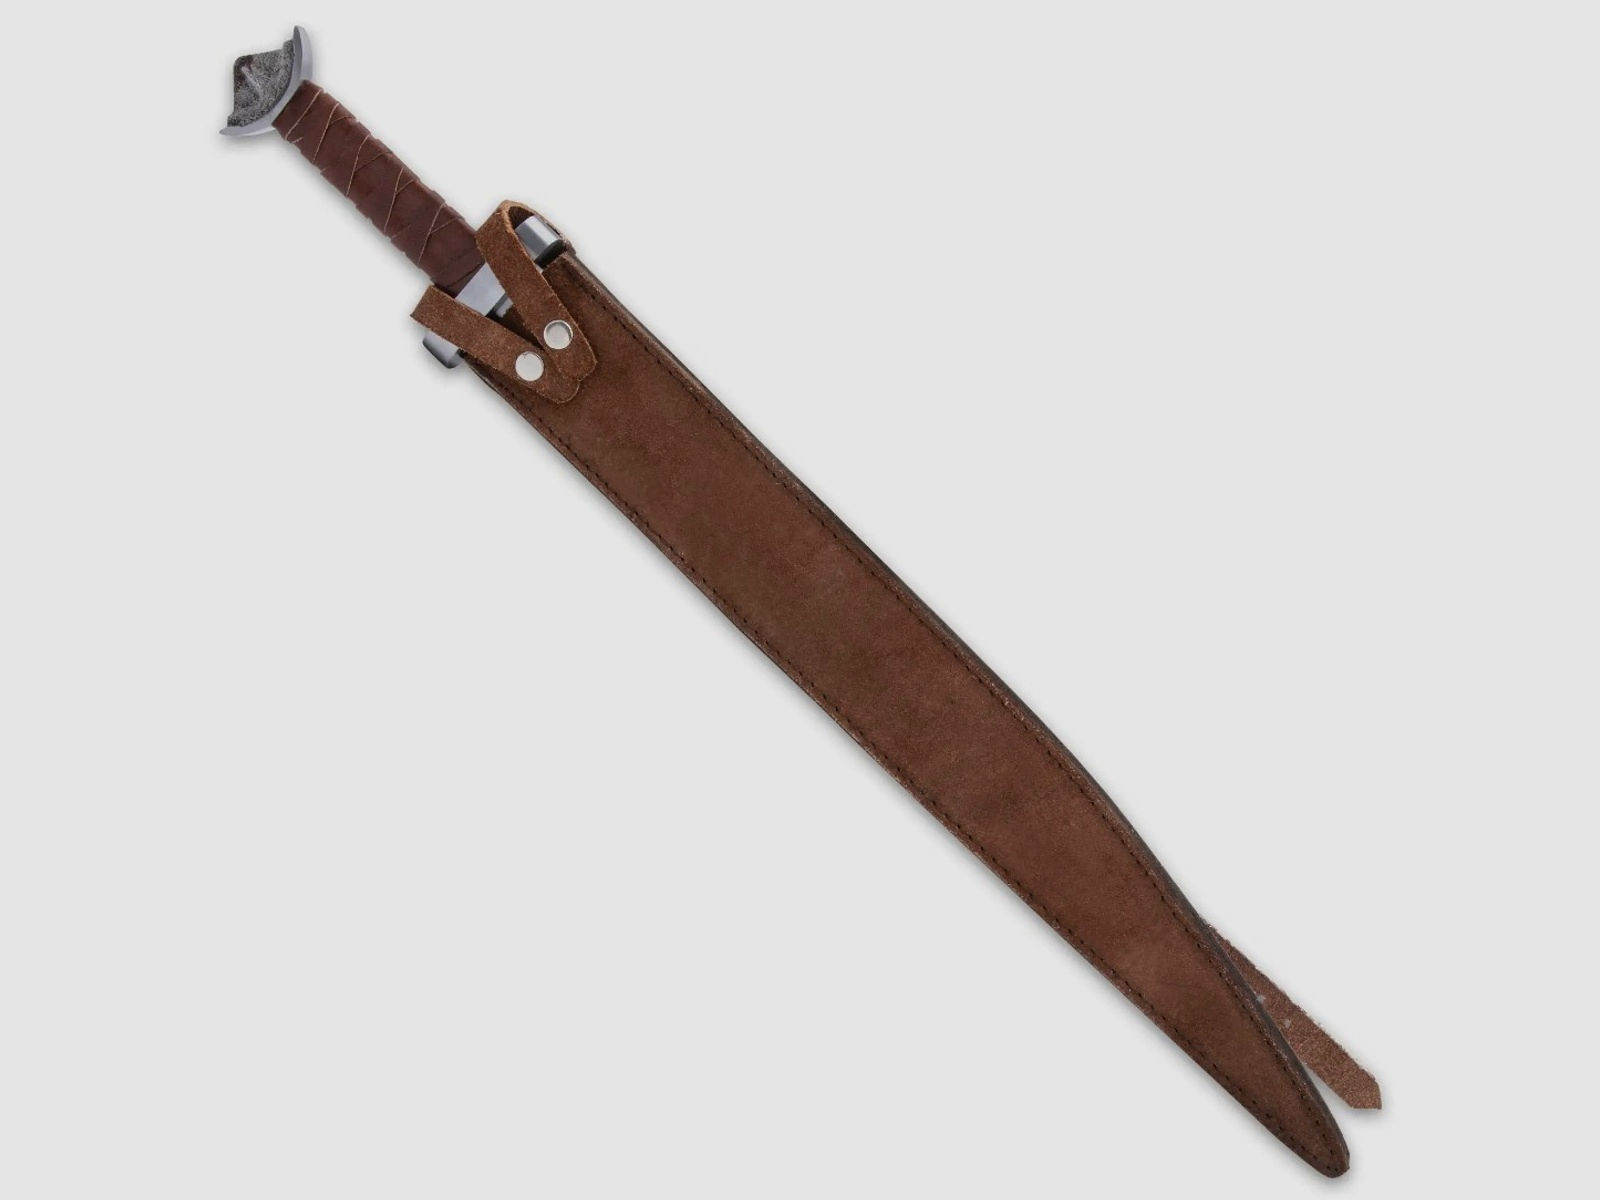 Legends In Steel Wikinger Seax Schwert mit Scheide | 42076